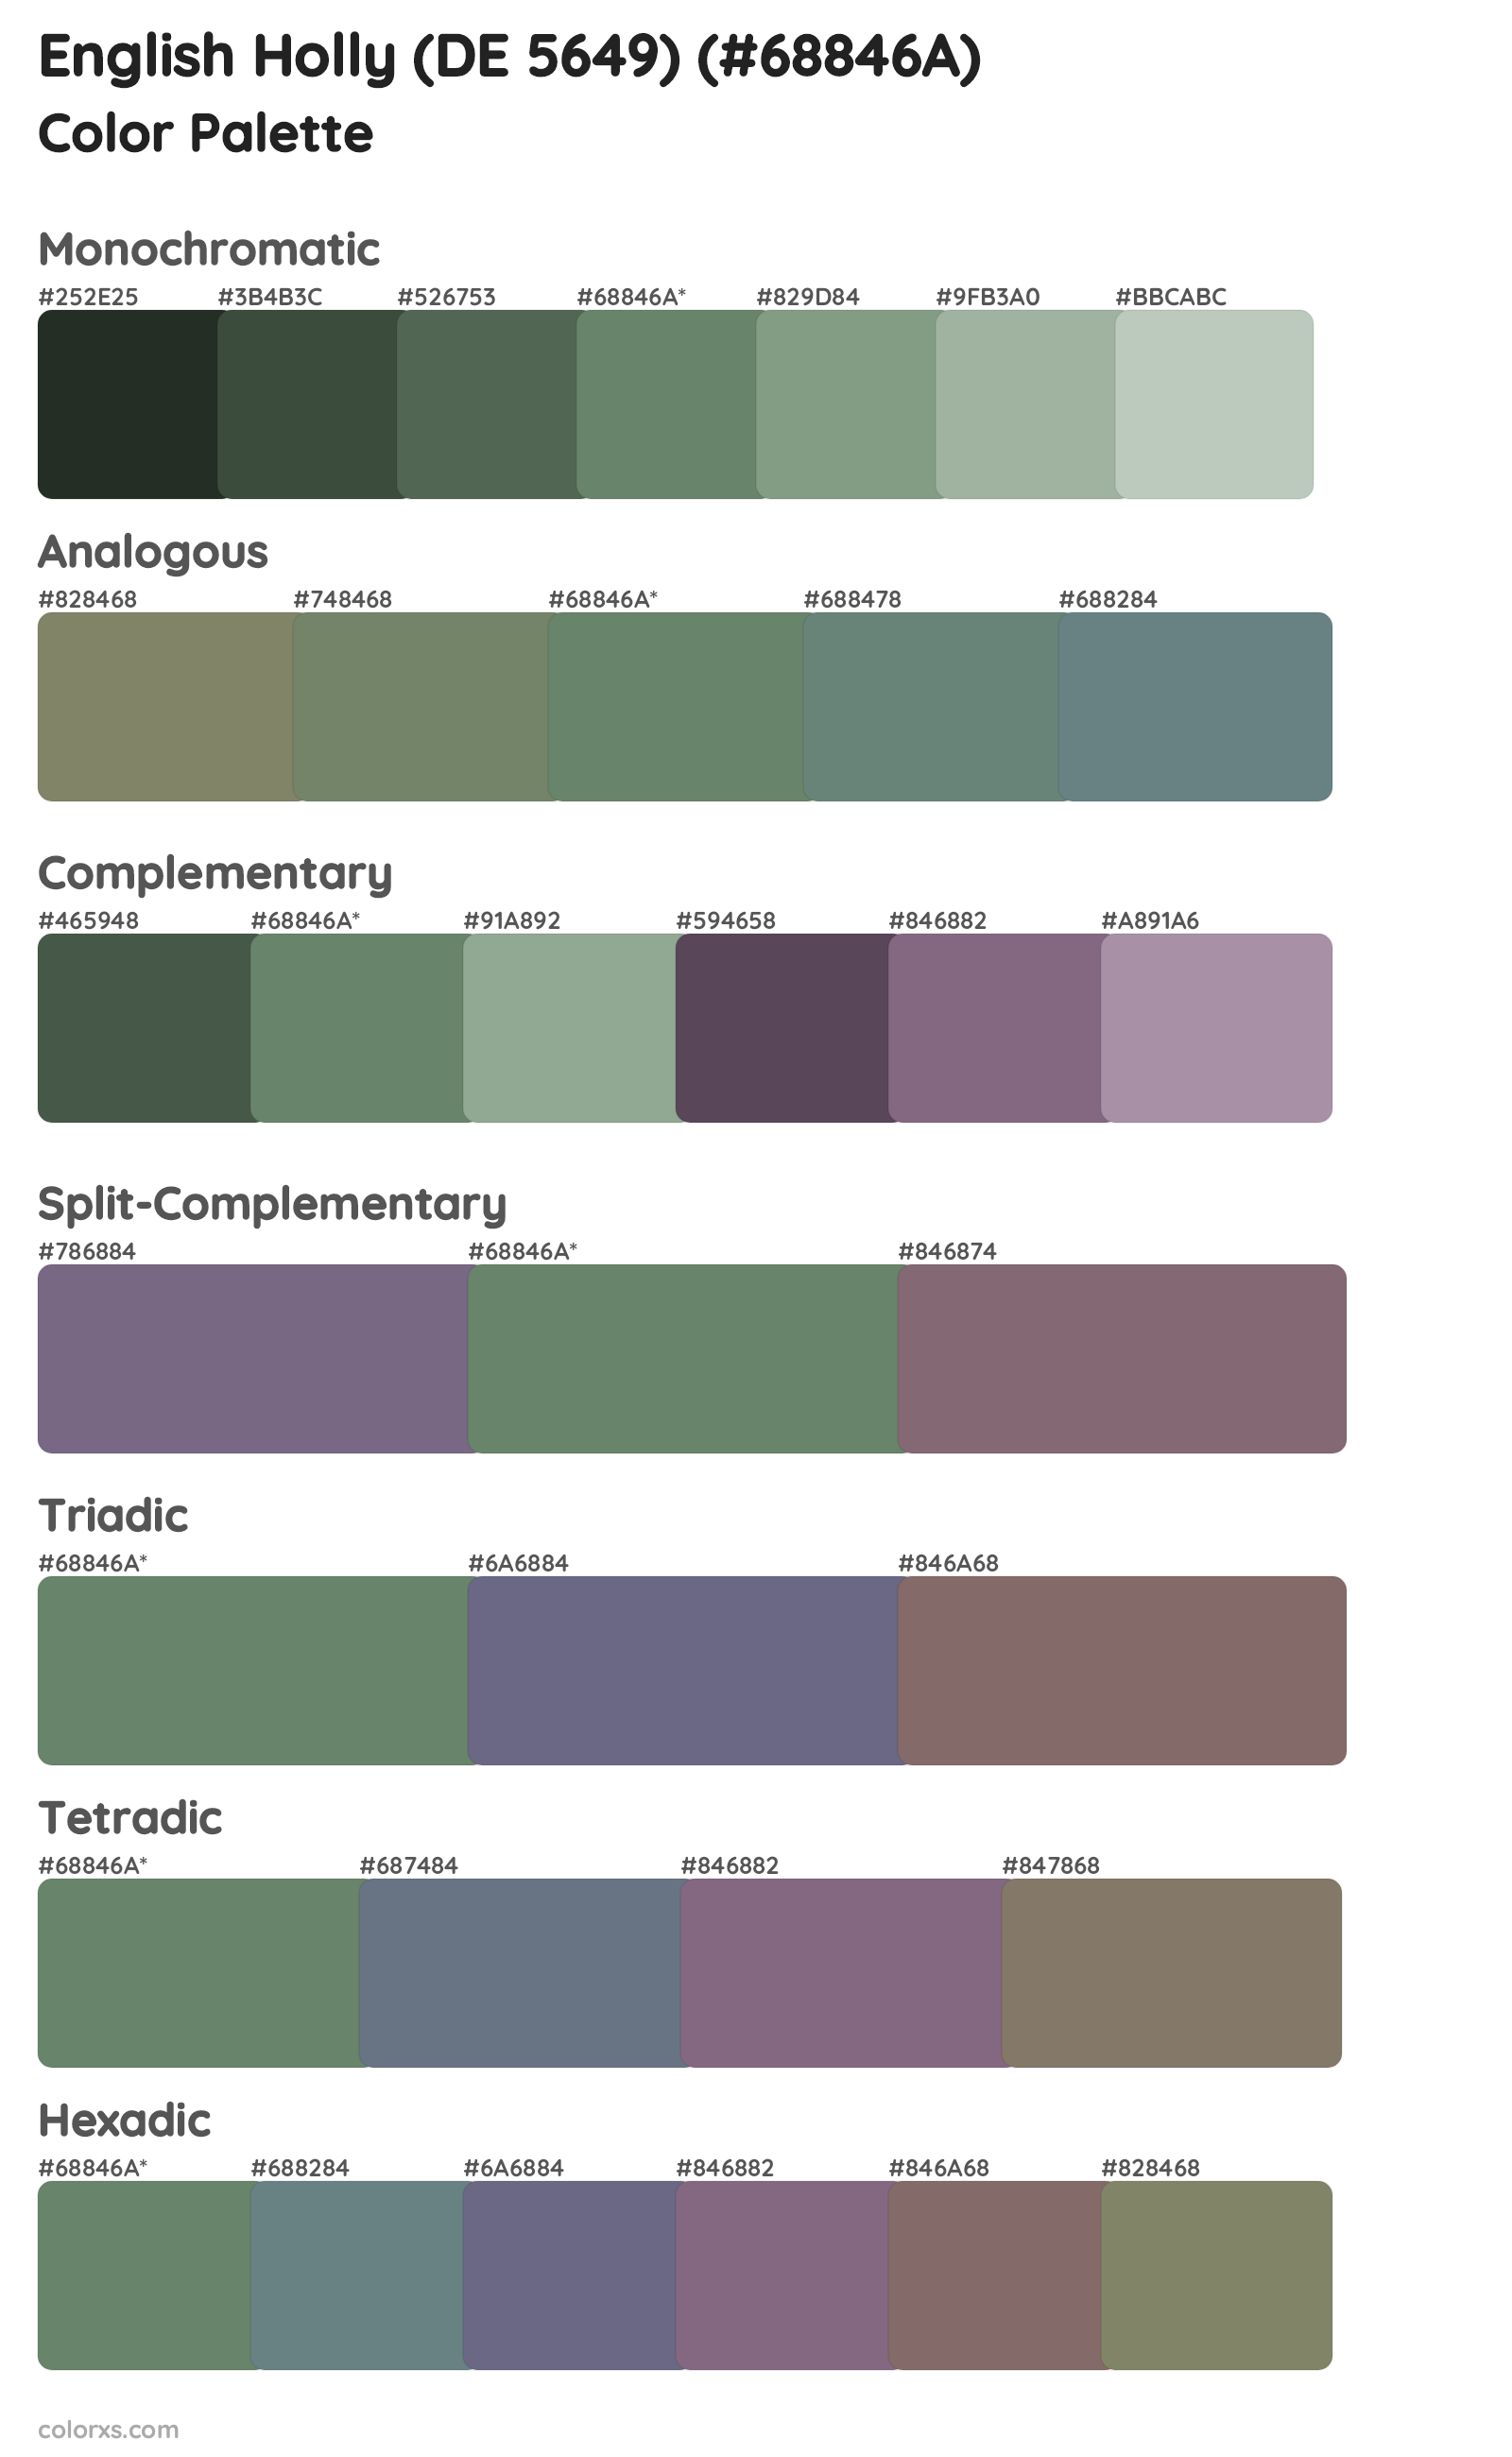 English Holly (DE 5649) Color Scheme Palettes